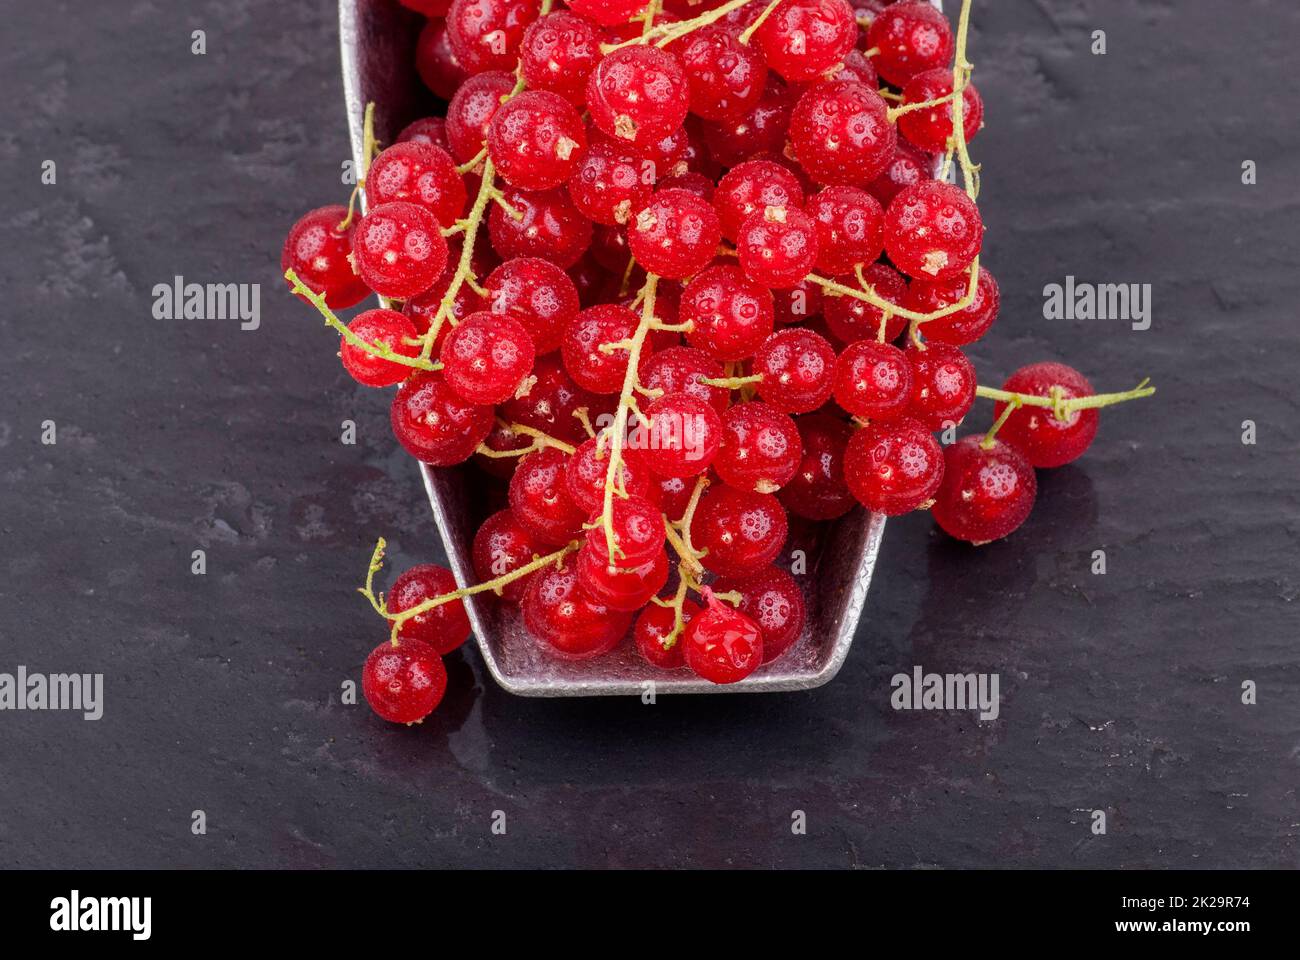 berries in closeup Stock Photo